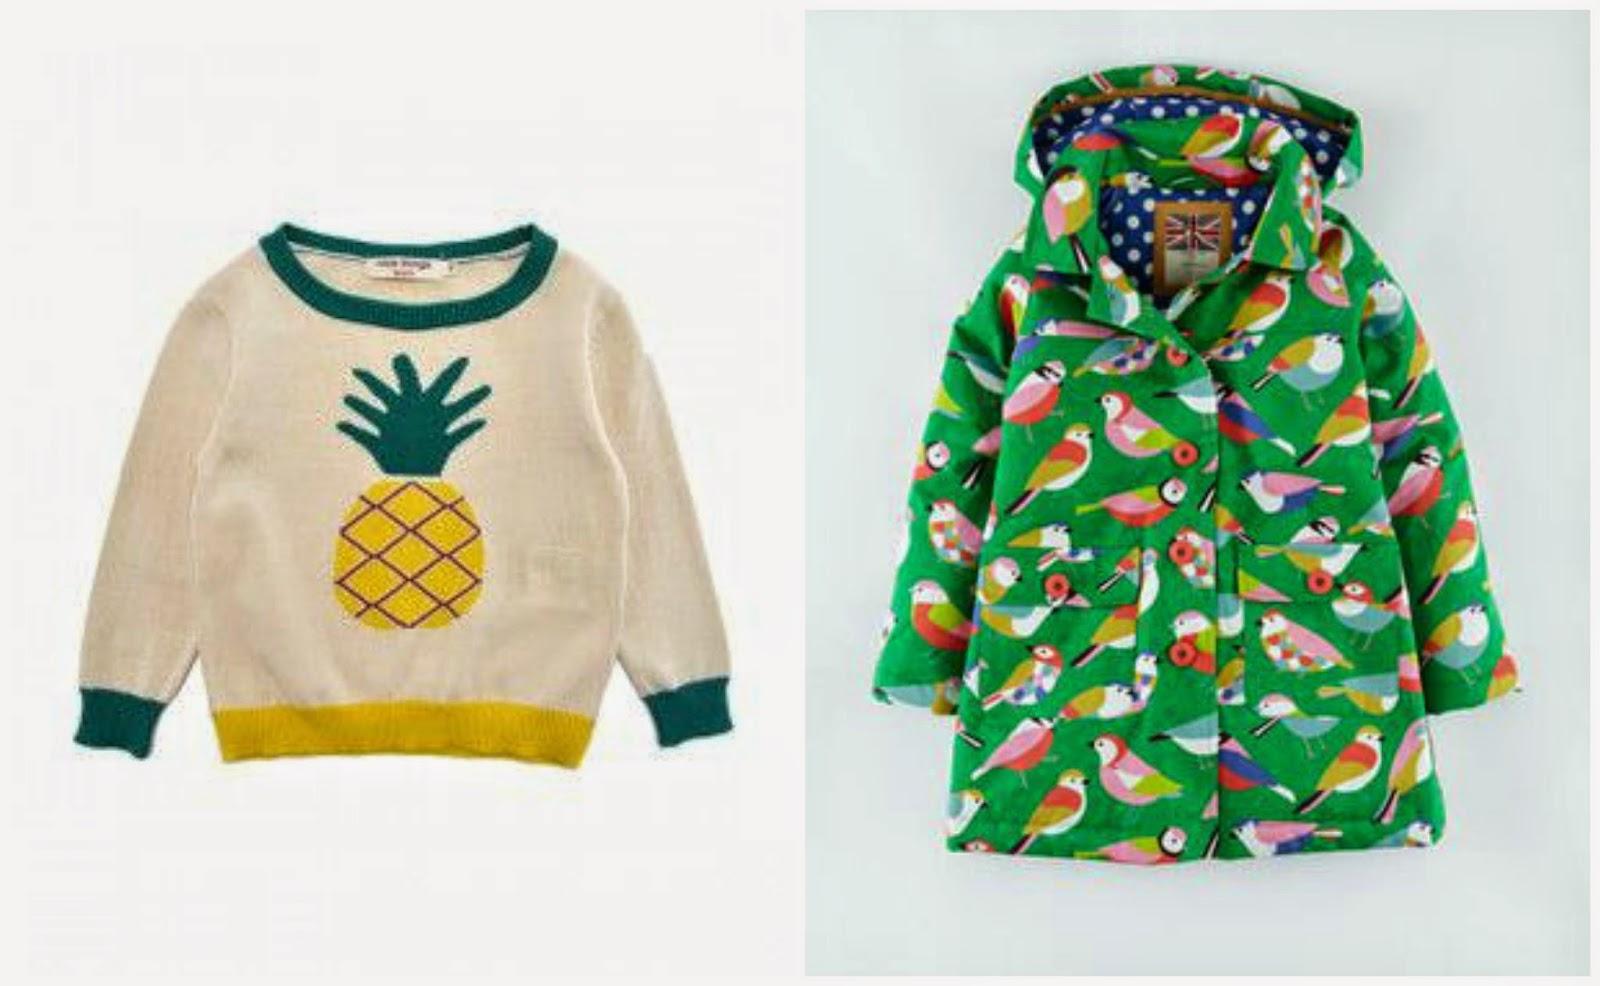 Kids clothes, cute stuff!